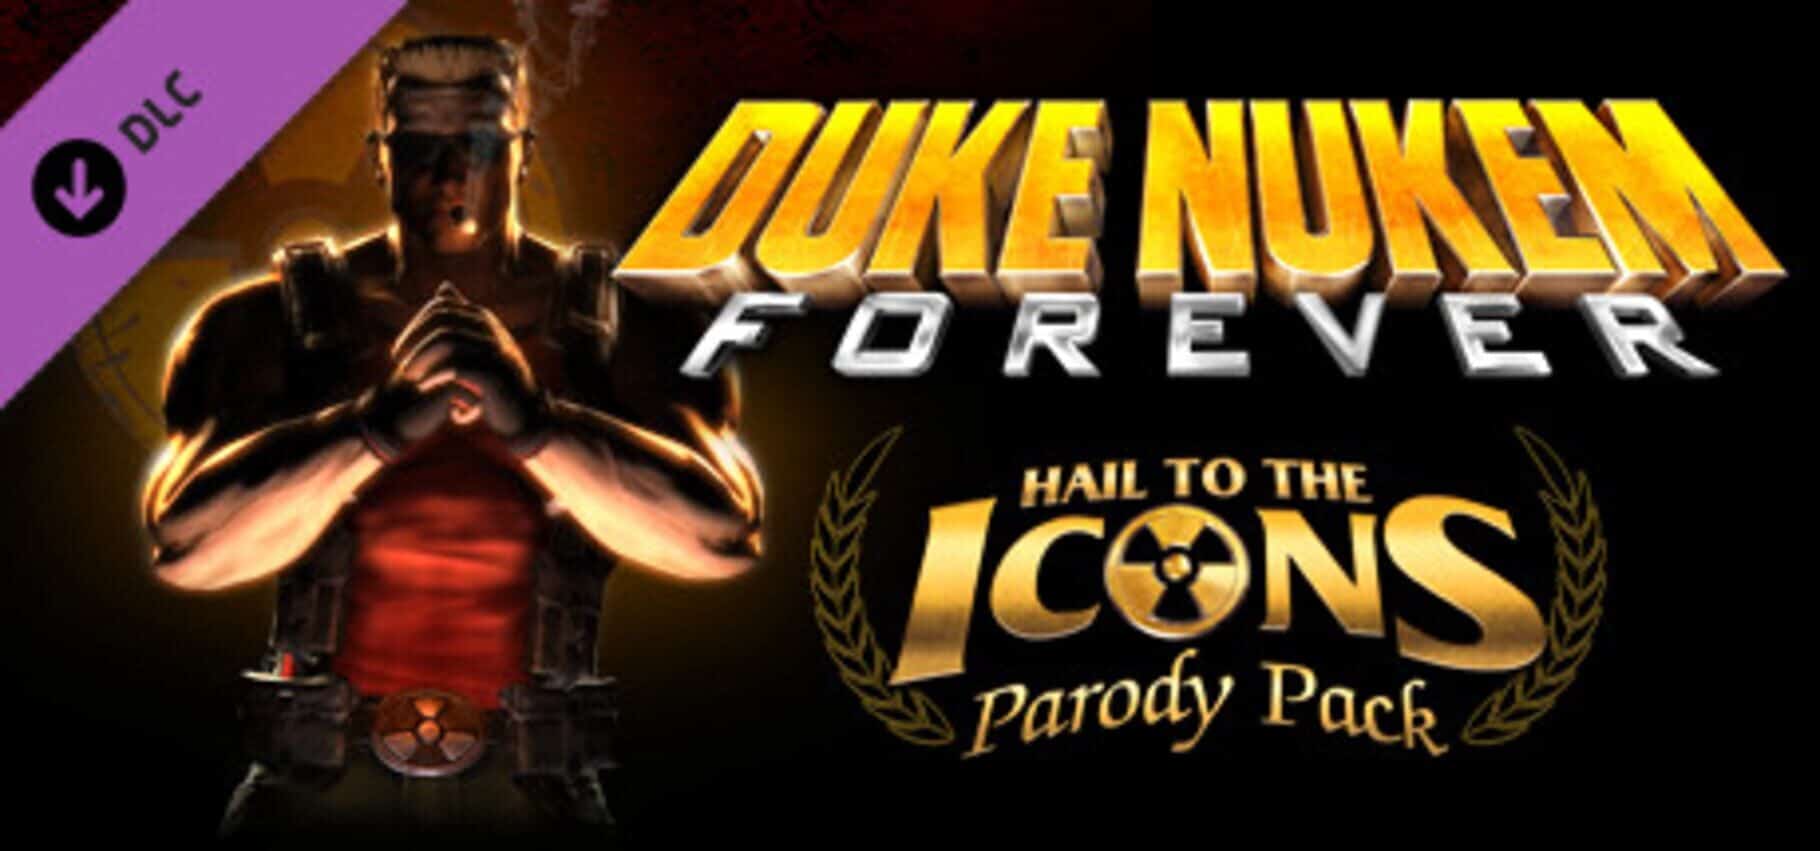 Duke Nukem Forever: Hail to the Icons Parody Pack